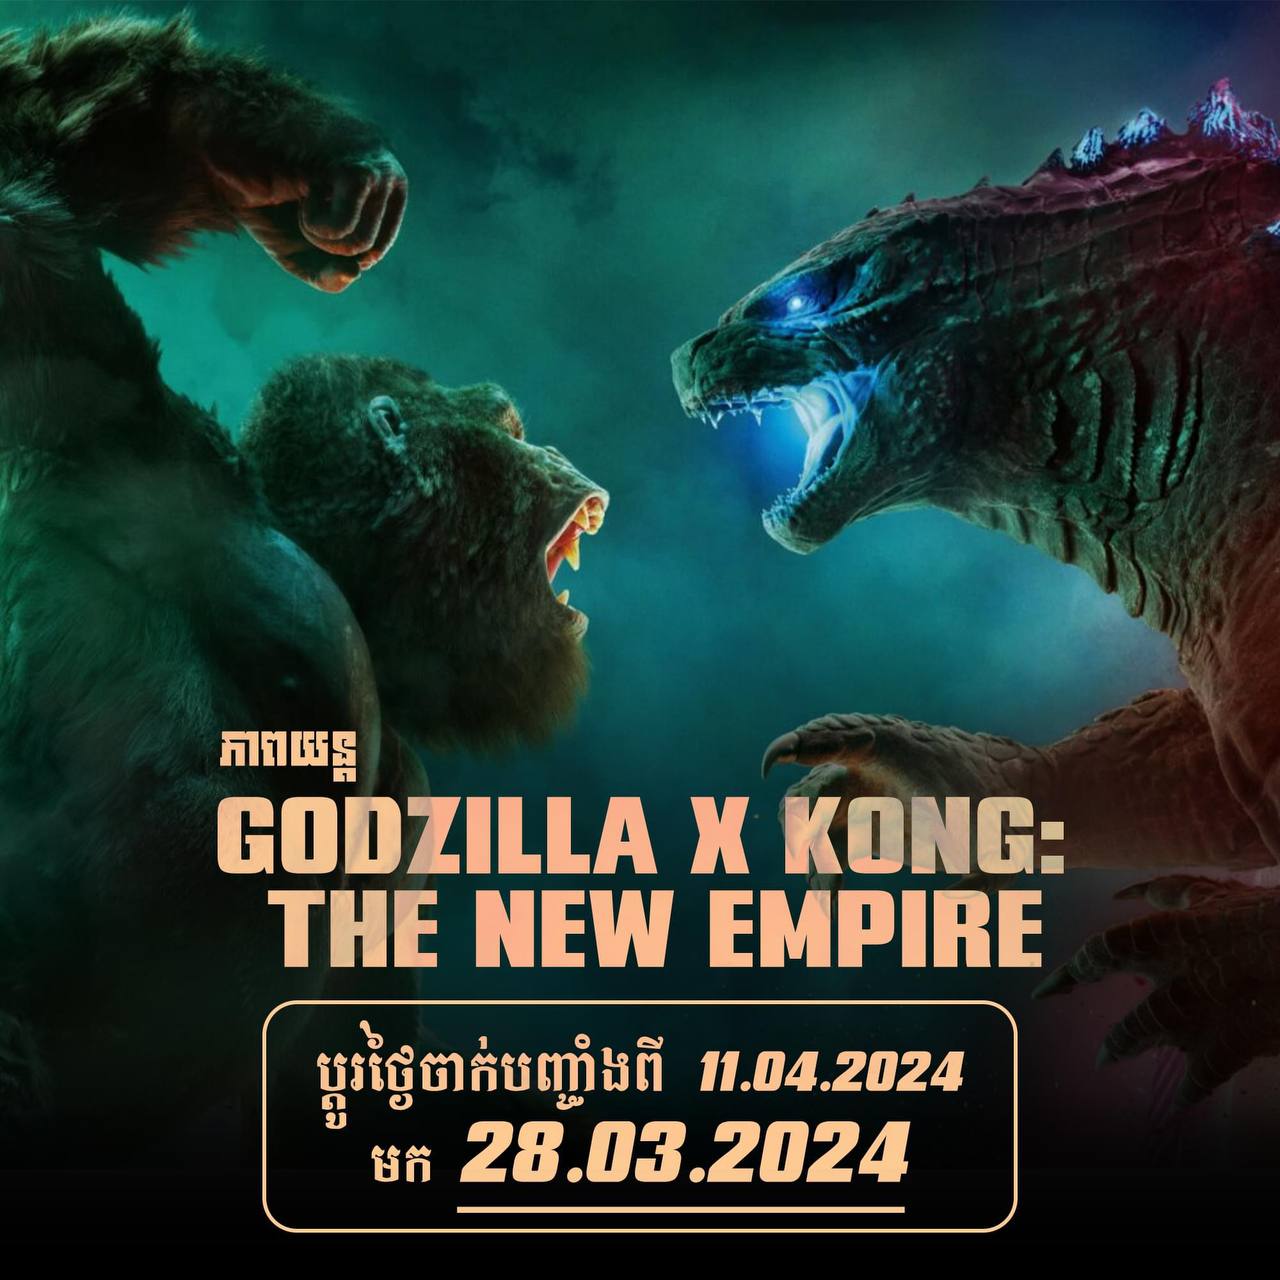 Godzilla x kong កំពត